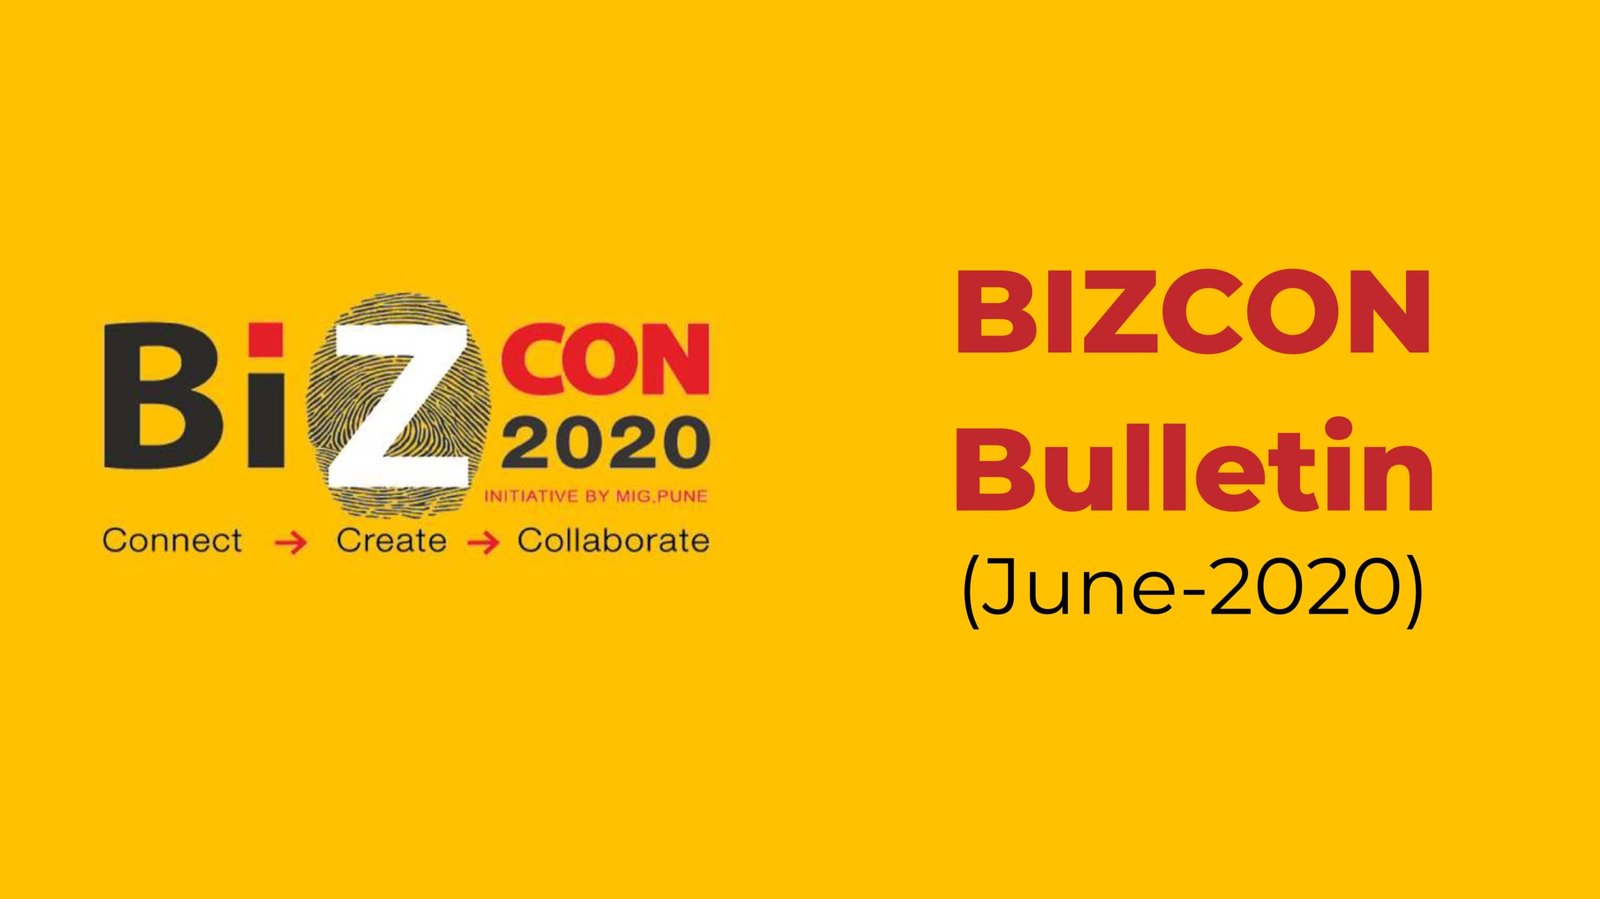 BIZCON Bulletin